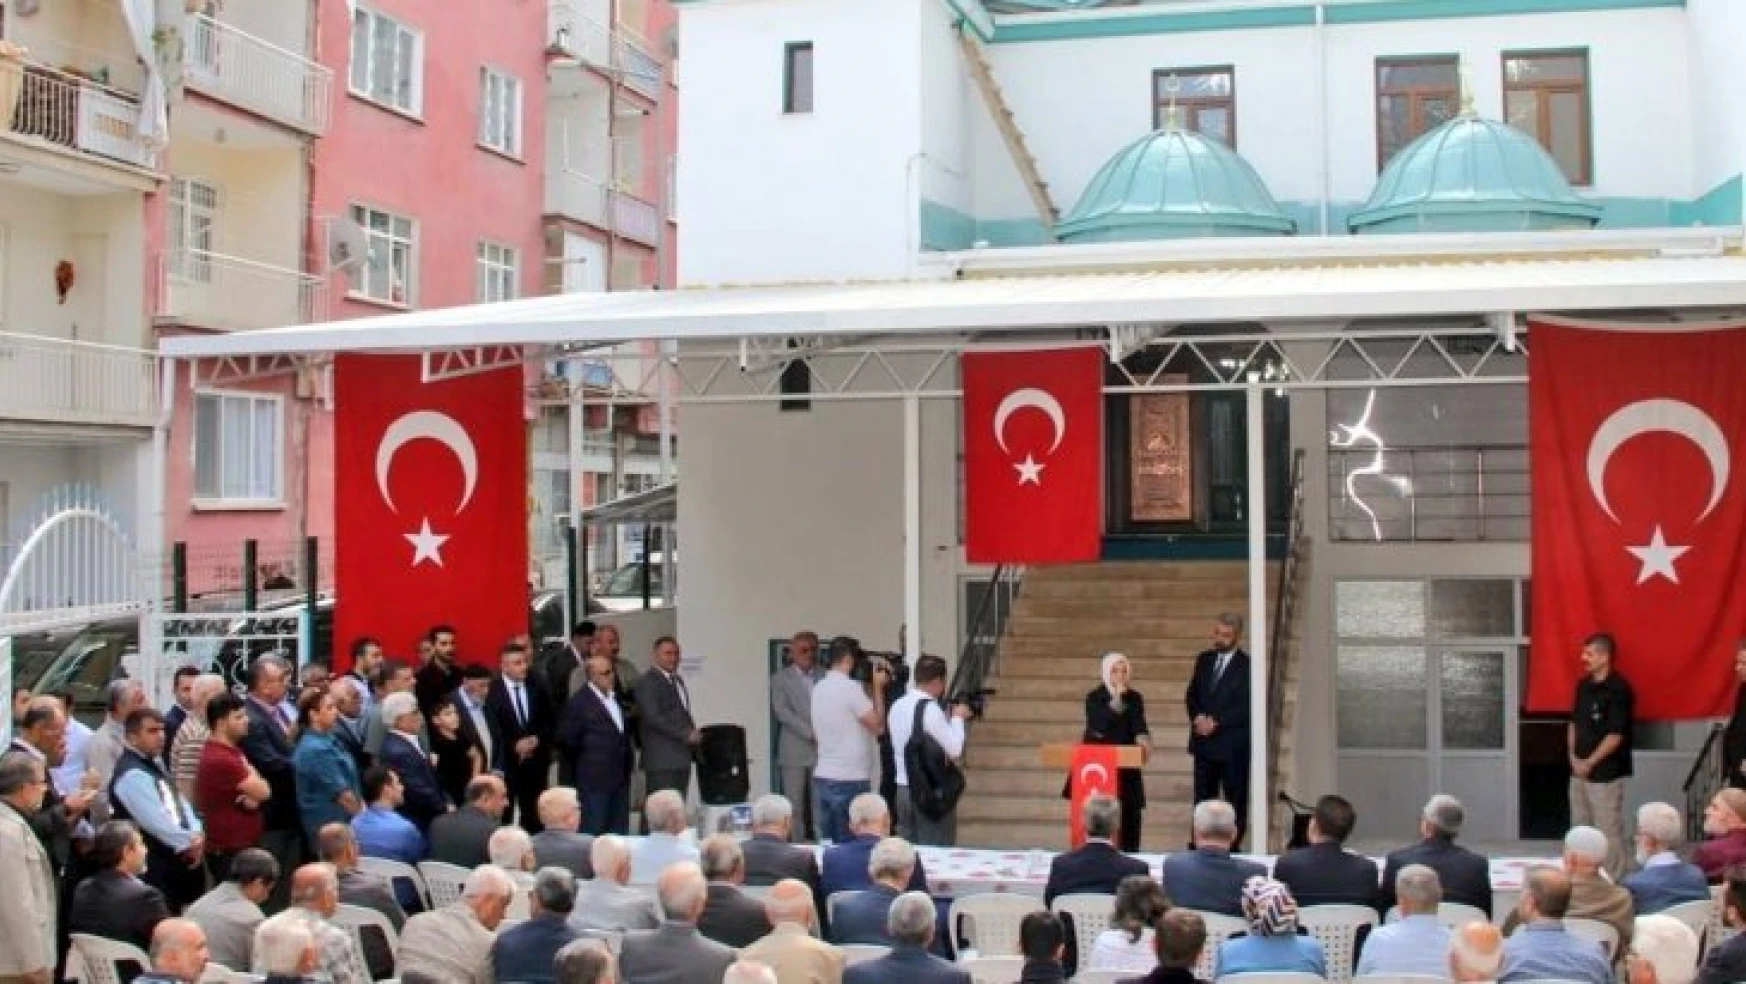 Milletvekili Çalık, Hacı Abdi Camii'nin açılış törenine katıldı.